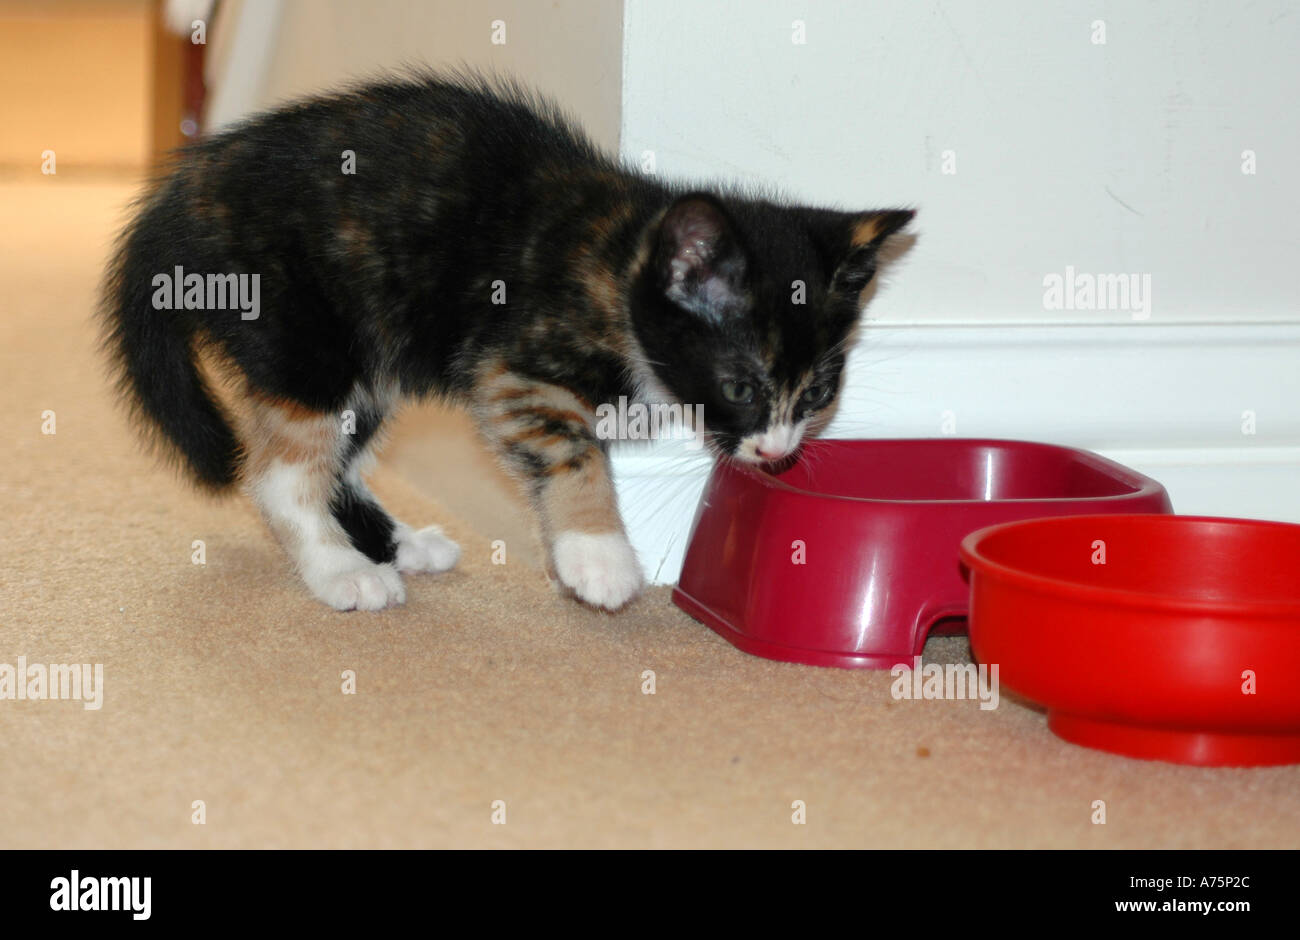 Kitten aged 7 weeks Stock Photo